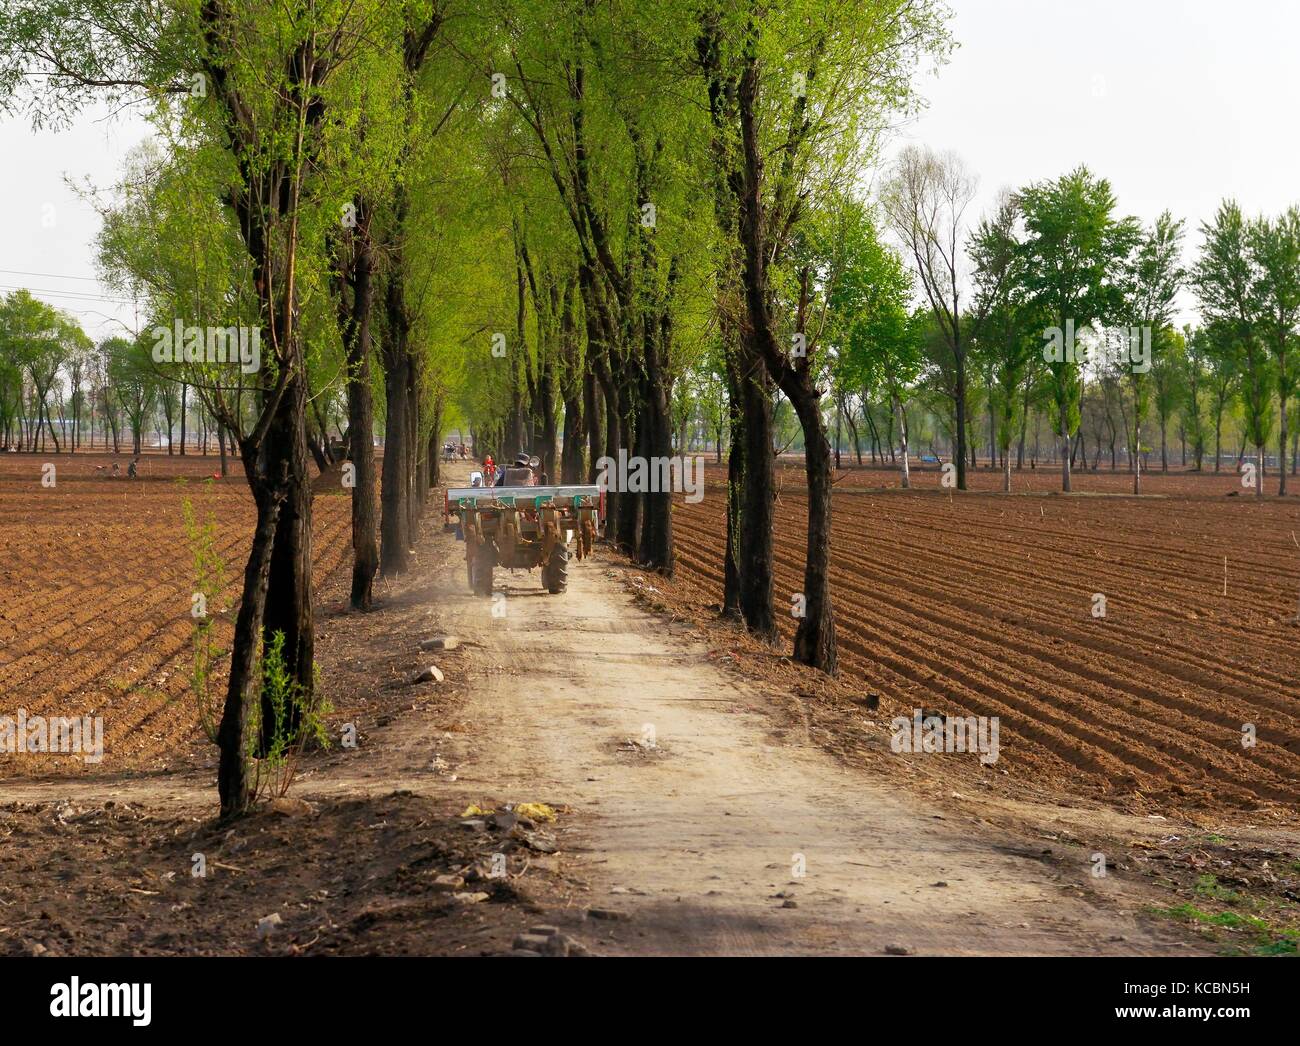 L'agriculture chinoise. semoir les semis de printemps dans les riches sols agricoles sur la bordure sud de la ville de Taiyuan, province de Shanxi, Chine Banque D'Images